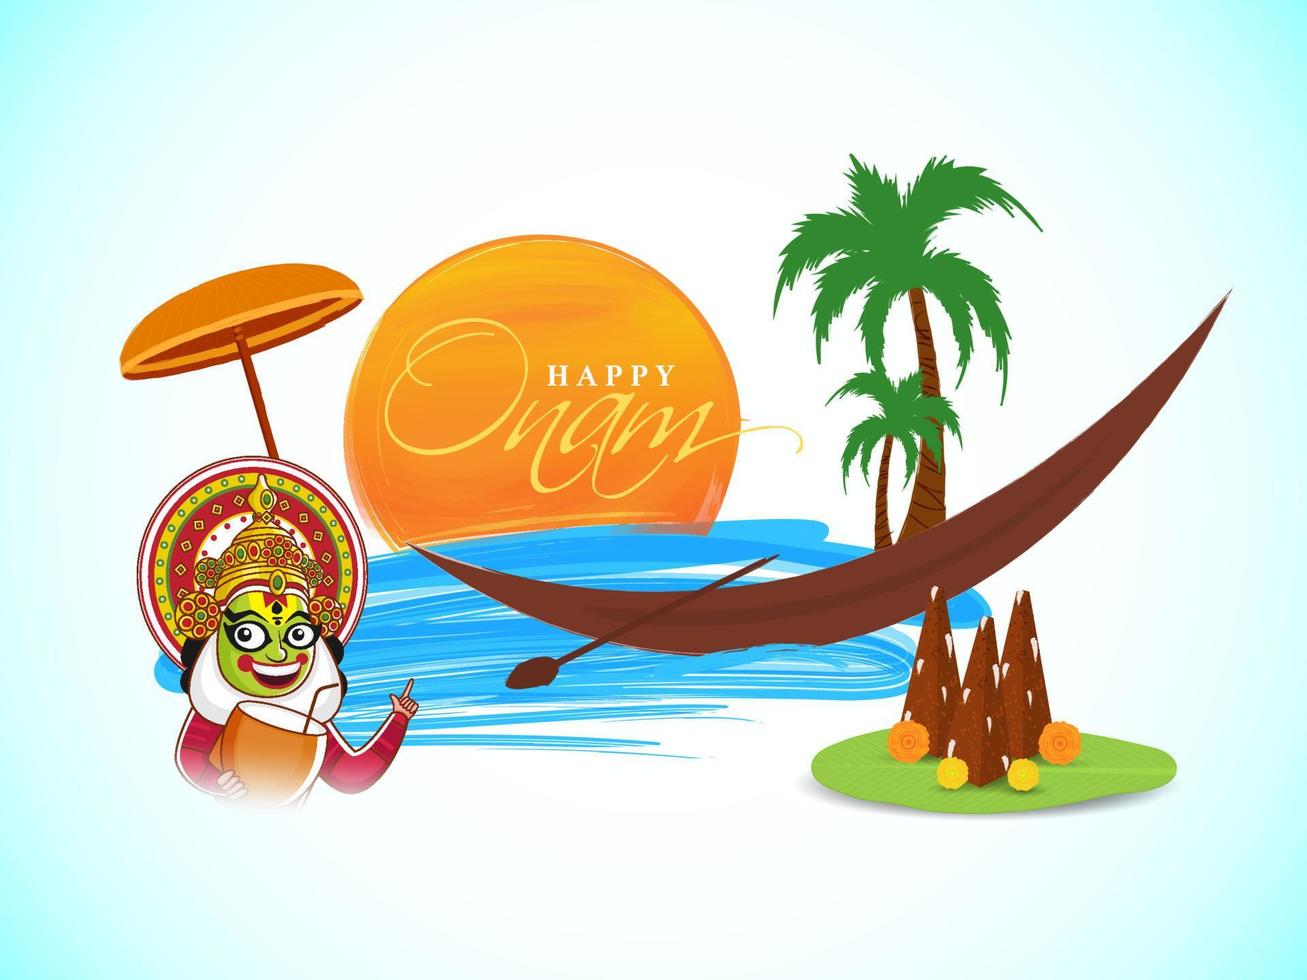 glad kathakali dansare innehav kokos dryck med thrikkakara appan idol, handflatan träd, aranmula båt och kreativ soluppgång hav på glansig blå bakgrund för Lycklig onam firande. vektor